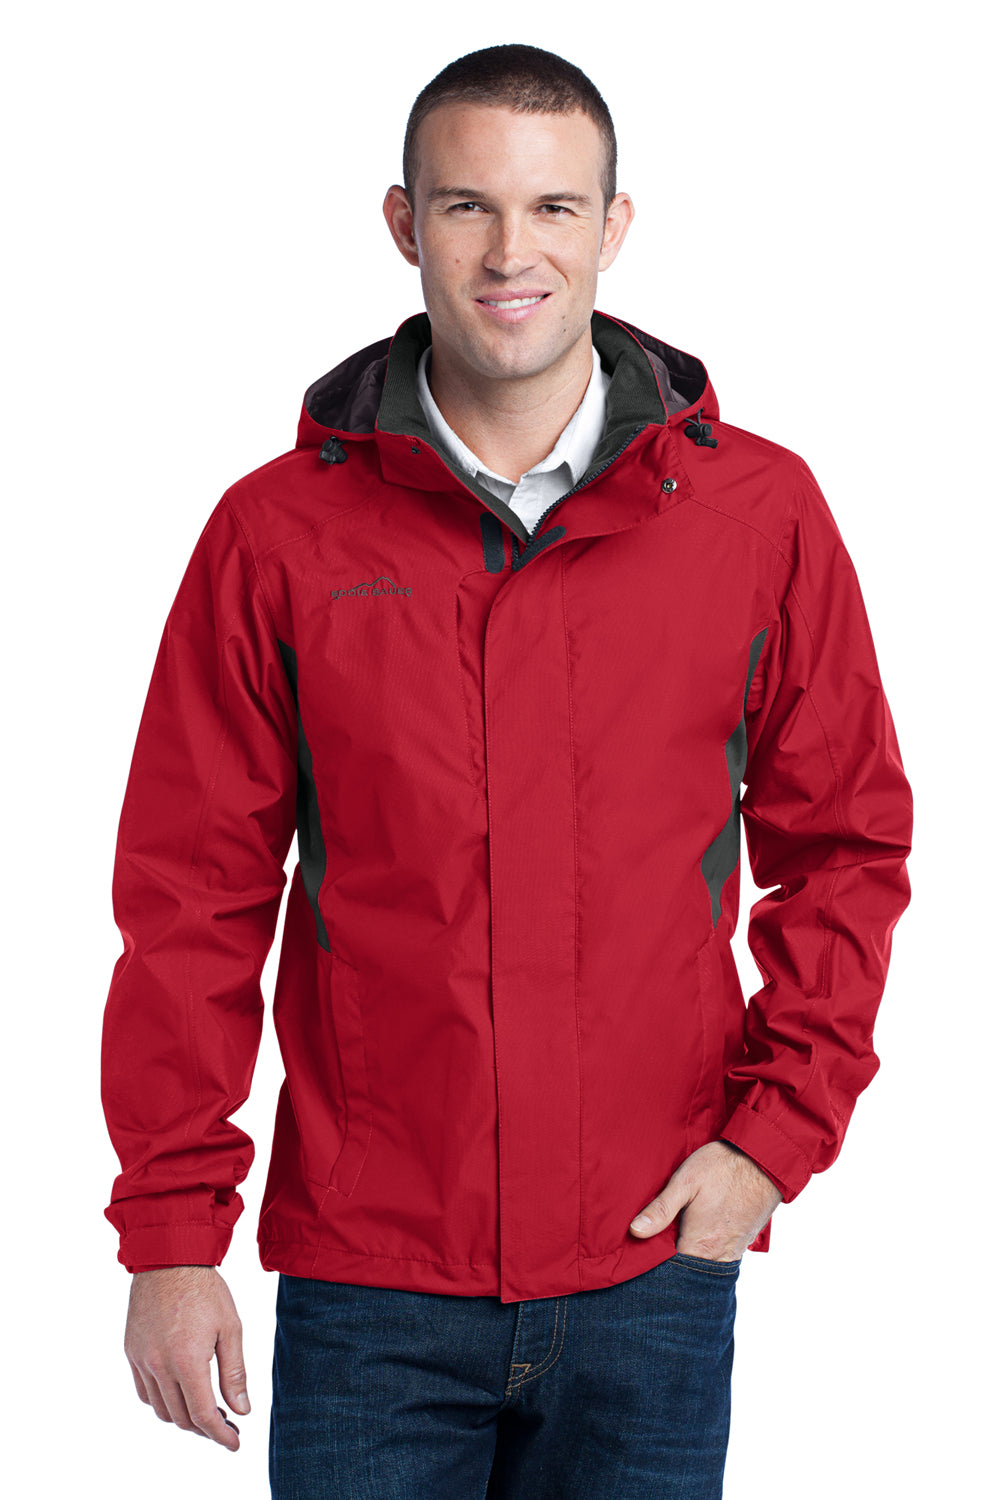 Eddie Bauer EB550 Mens Waterproof Full Zip Hooded Jacket Red Front